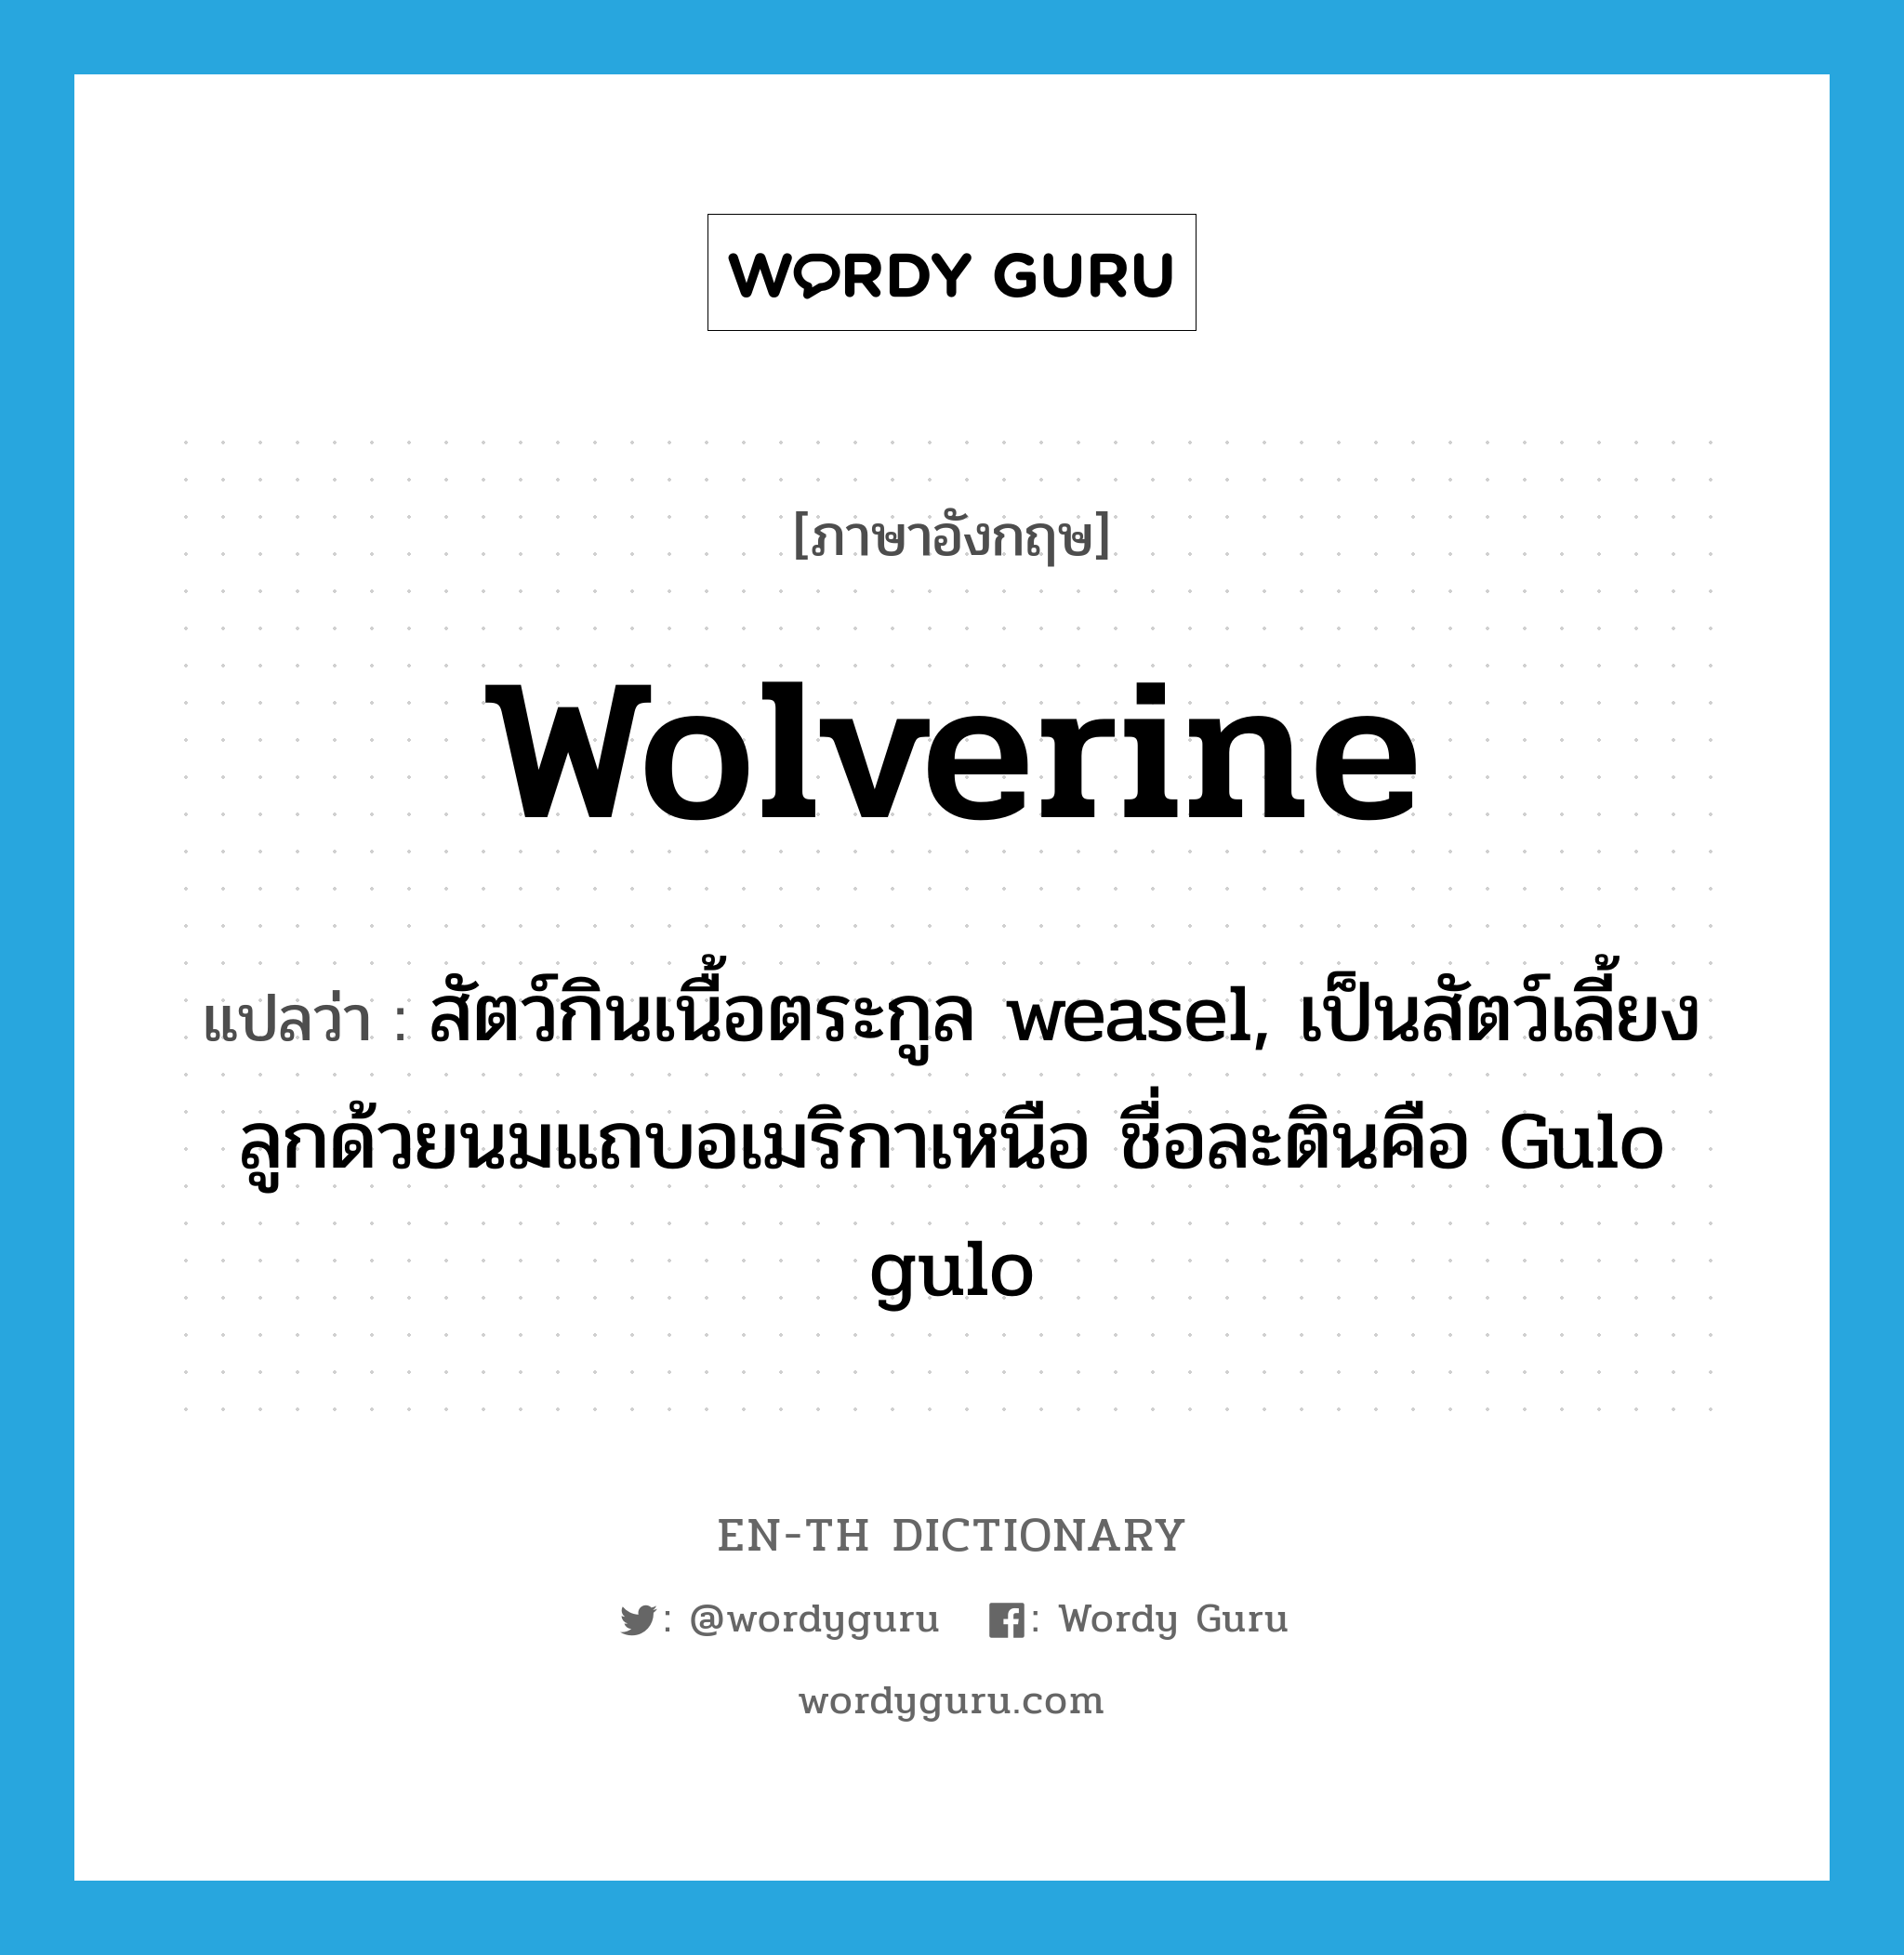 wolverine แปลว่า?, คำศัพท์ภาษาอังกฤษ wolverine แปลว่า สัตว์กินเนื้อตระกูล weasel, เป็นสัตว์เลี้ยงลูกด้วยนมแถบอเมริกาเหนือ ชื่อละตินคือ Gulo gulo ประเภท N หมวด N